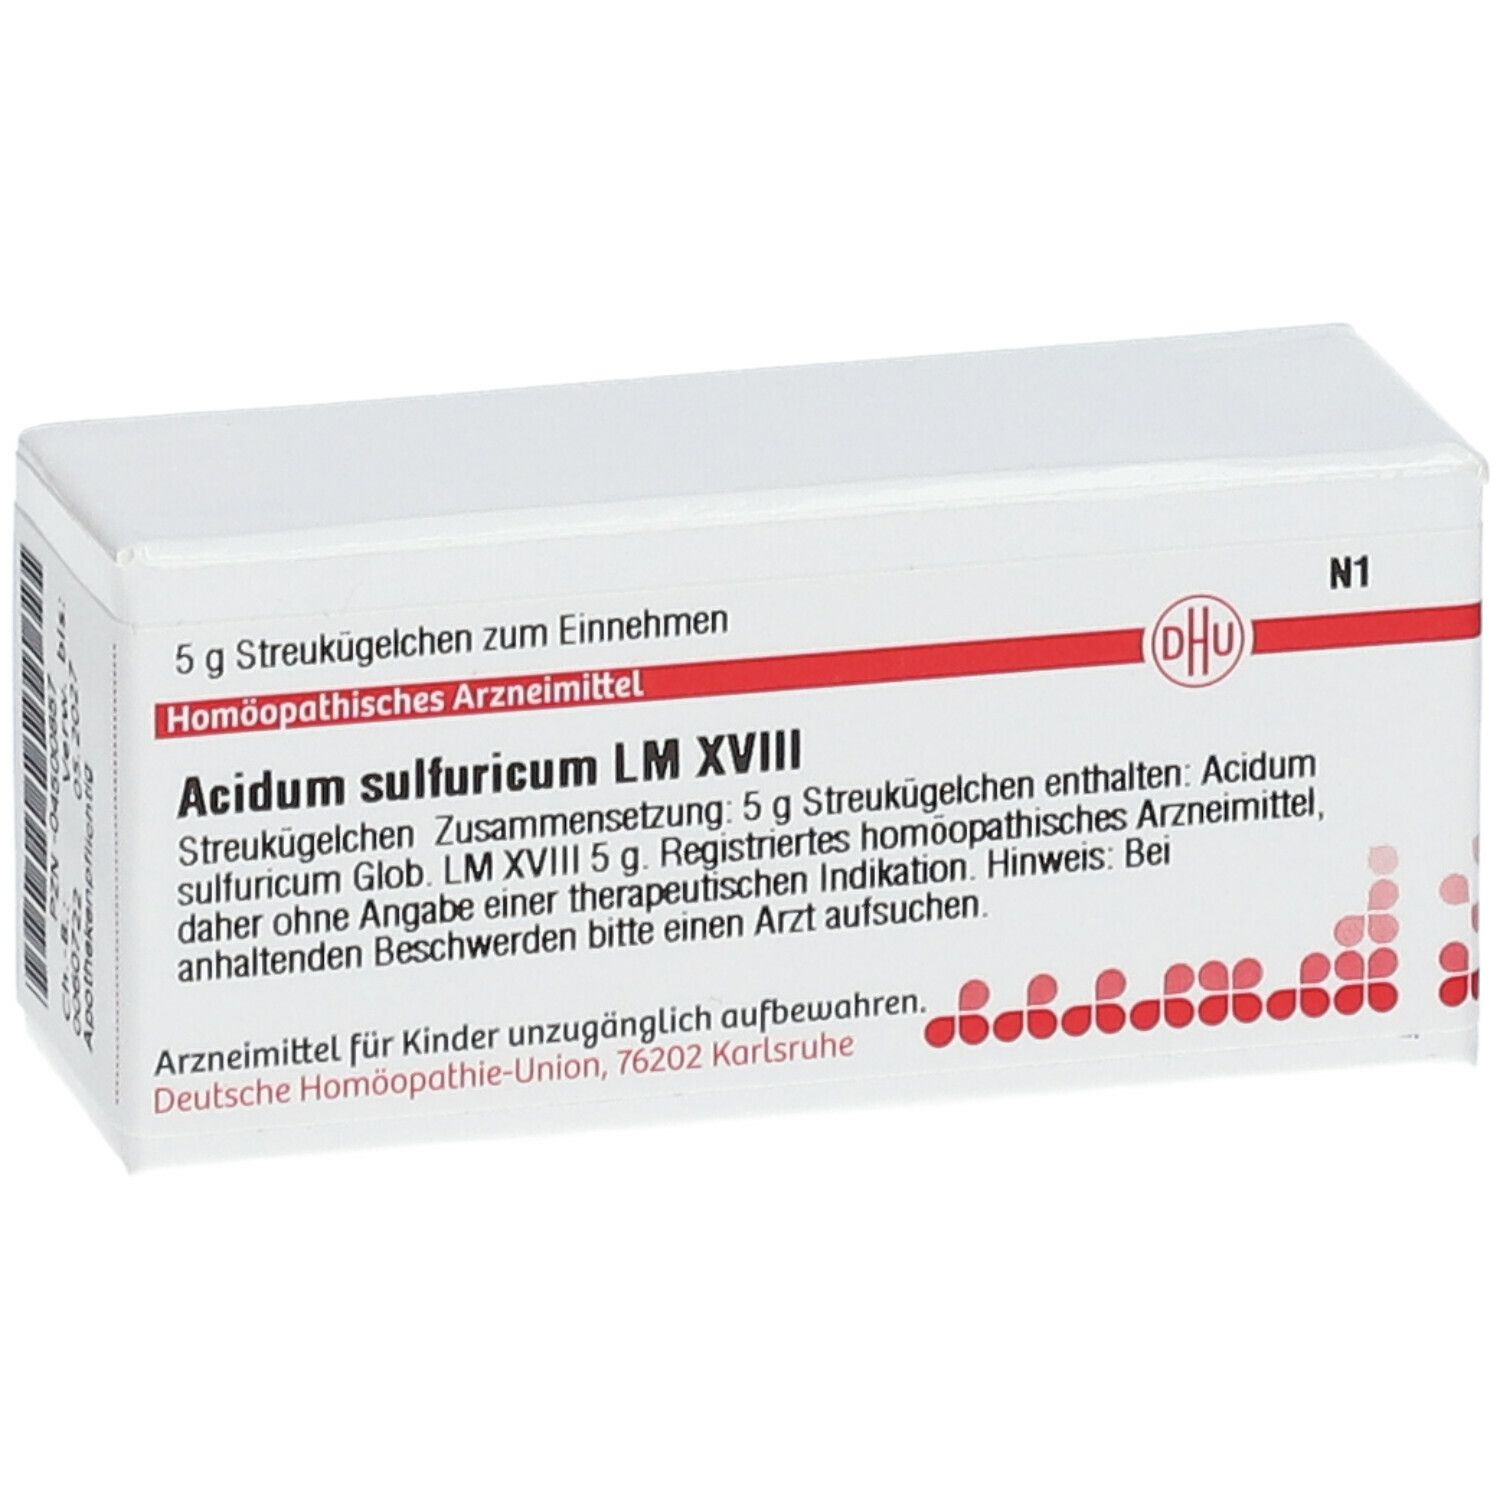 DHU Acidum Sulfuricum LM XVIII